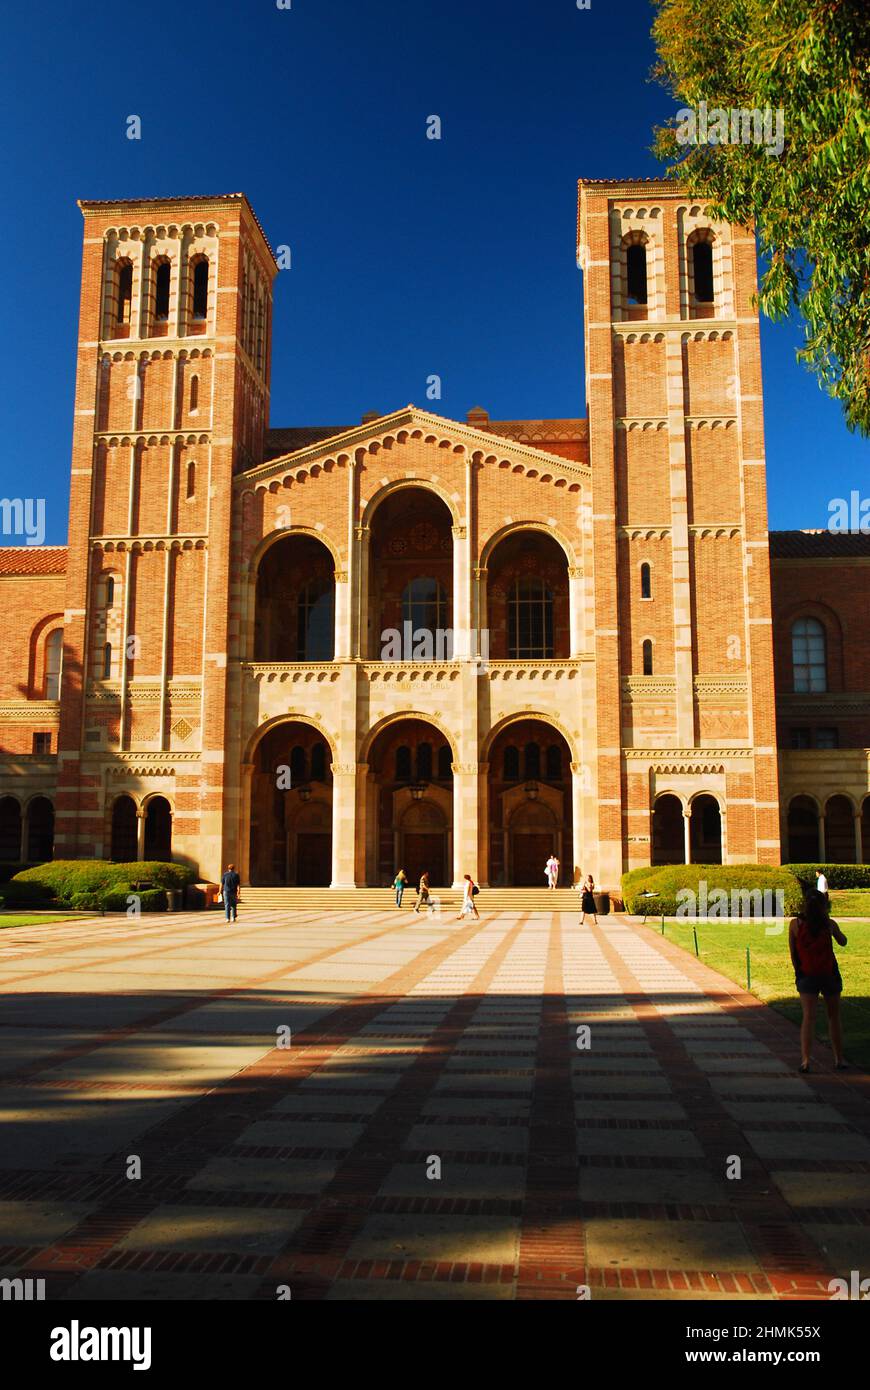 Le Royce Hall est situé au centre du campus de l'UCLA et sert de centre de théâtre et d'arts de la scène de l'université Banque D'Images